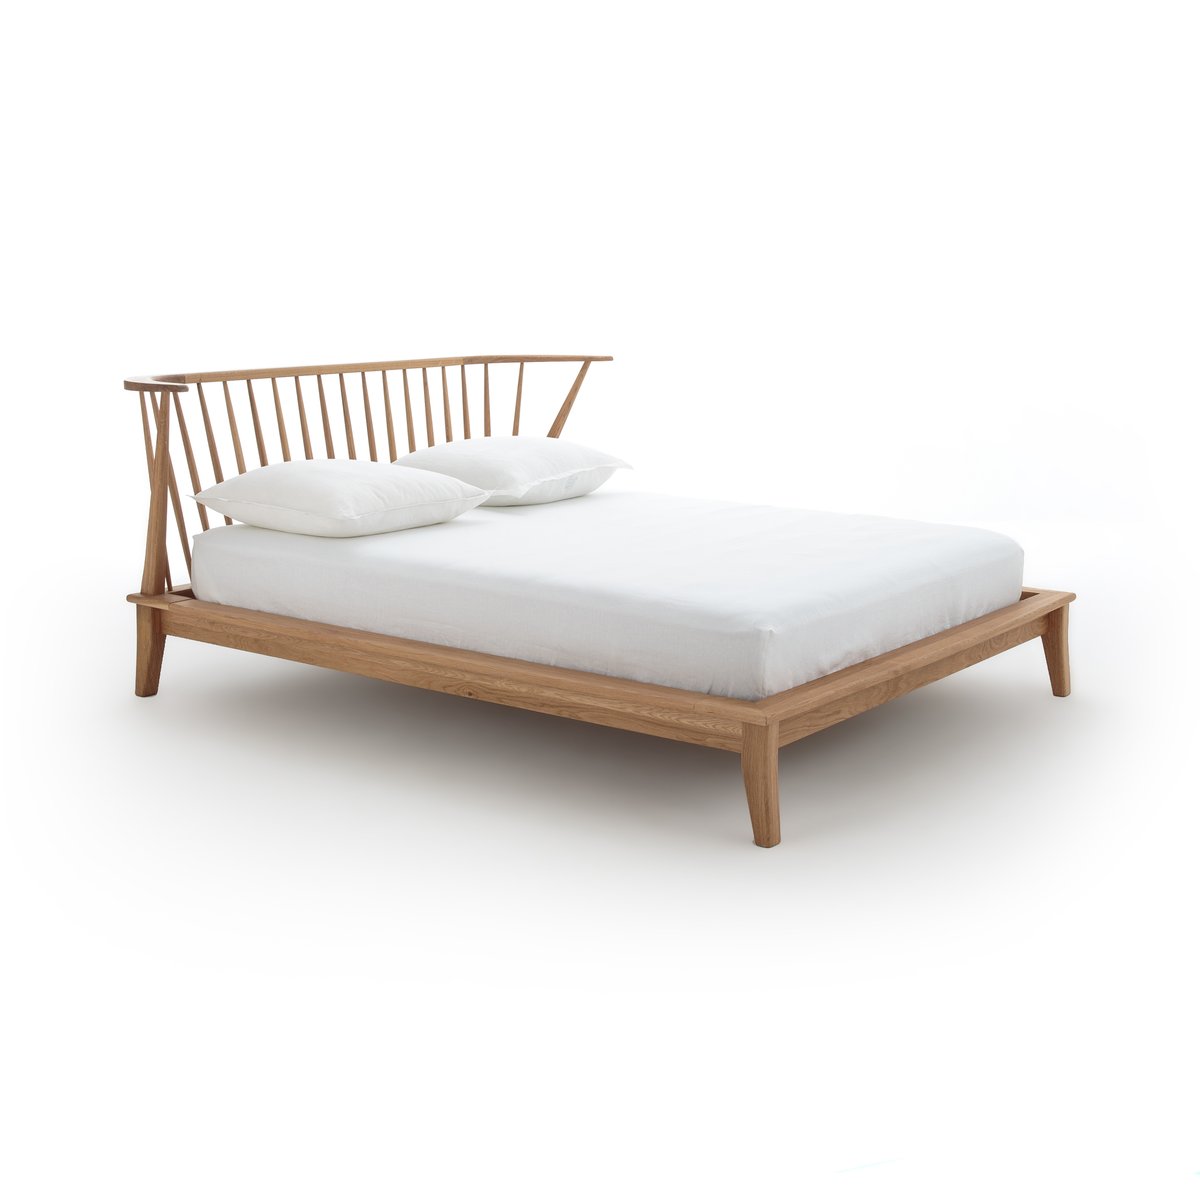 Кровать La Redoute Из массива дуба Windsor 160 x 200 см каштановый, размер 160 x 200 см - фото 4